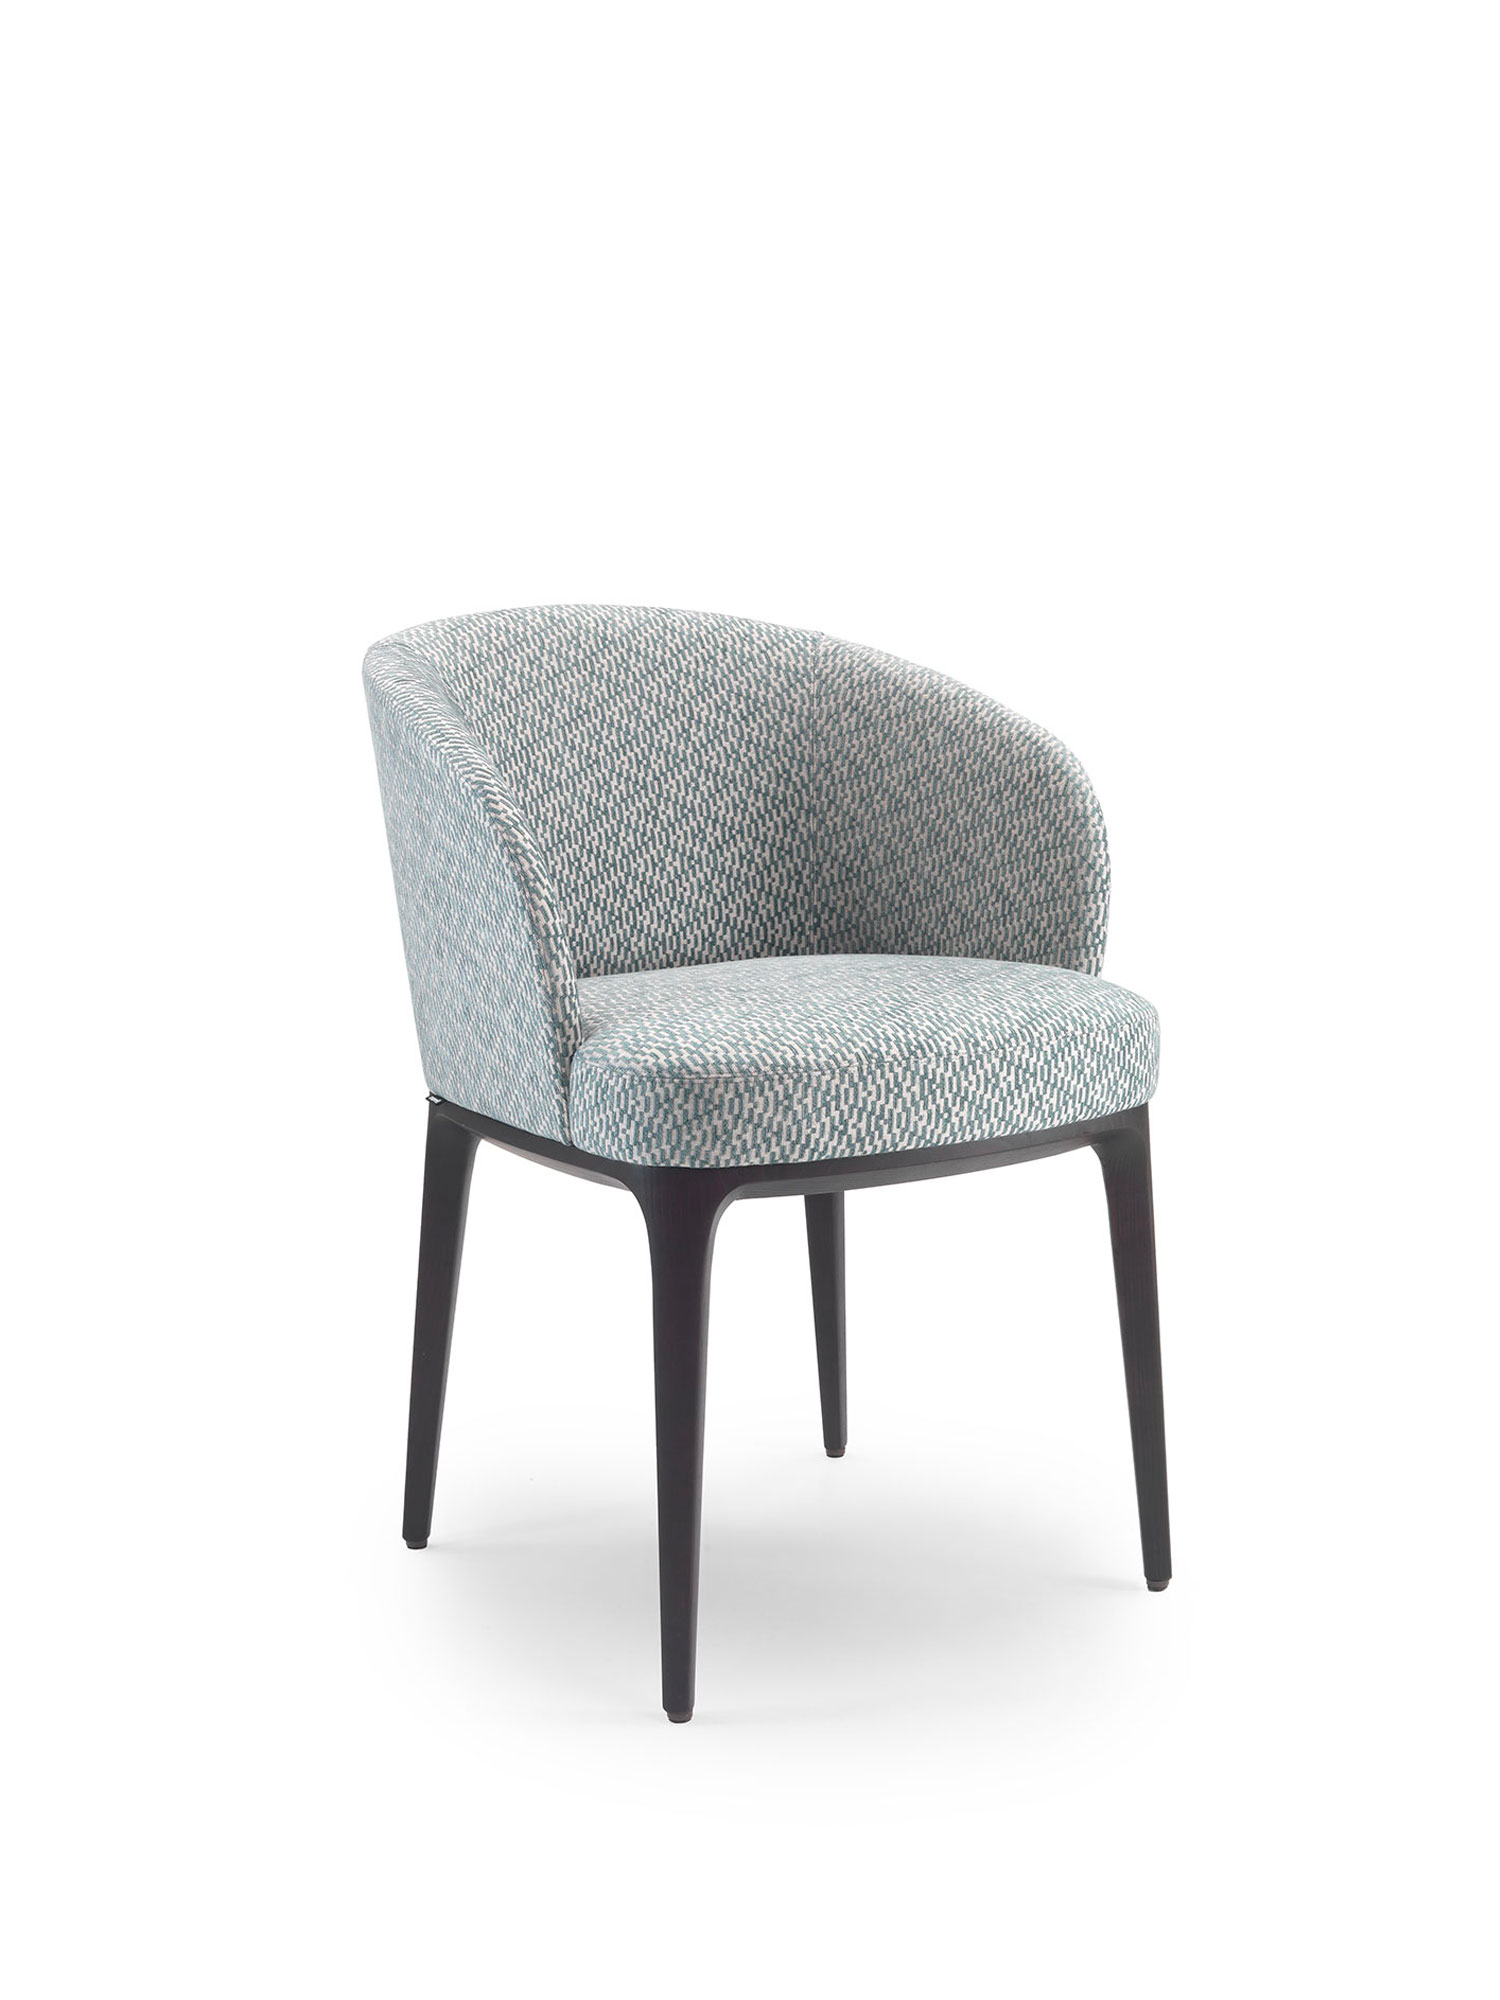 Img069 Paris Fabricr Chair